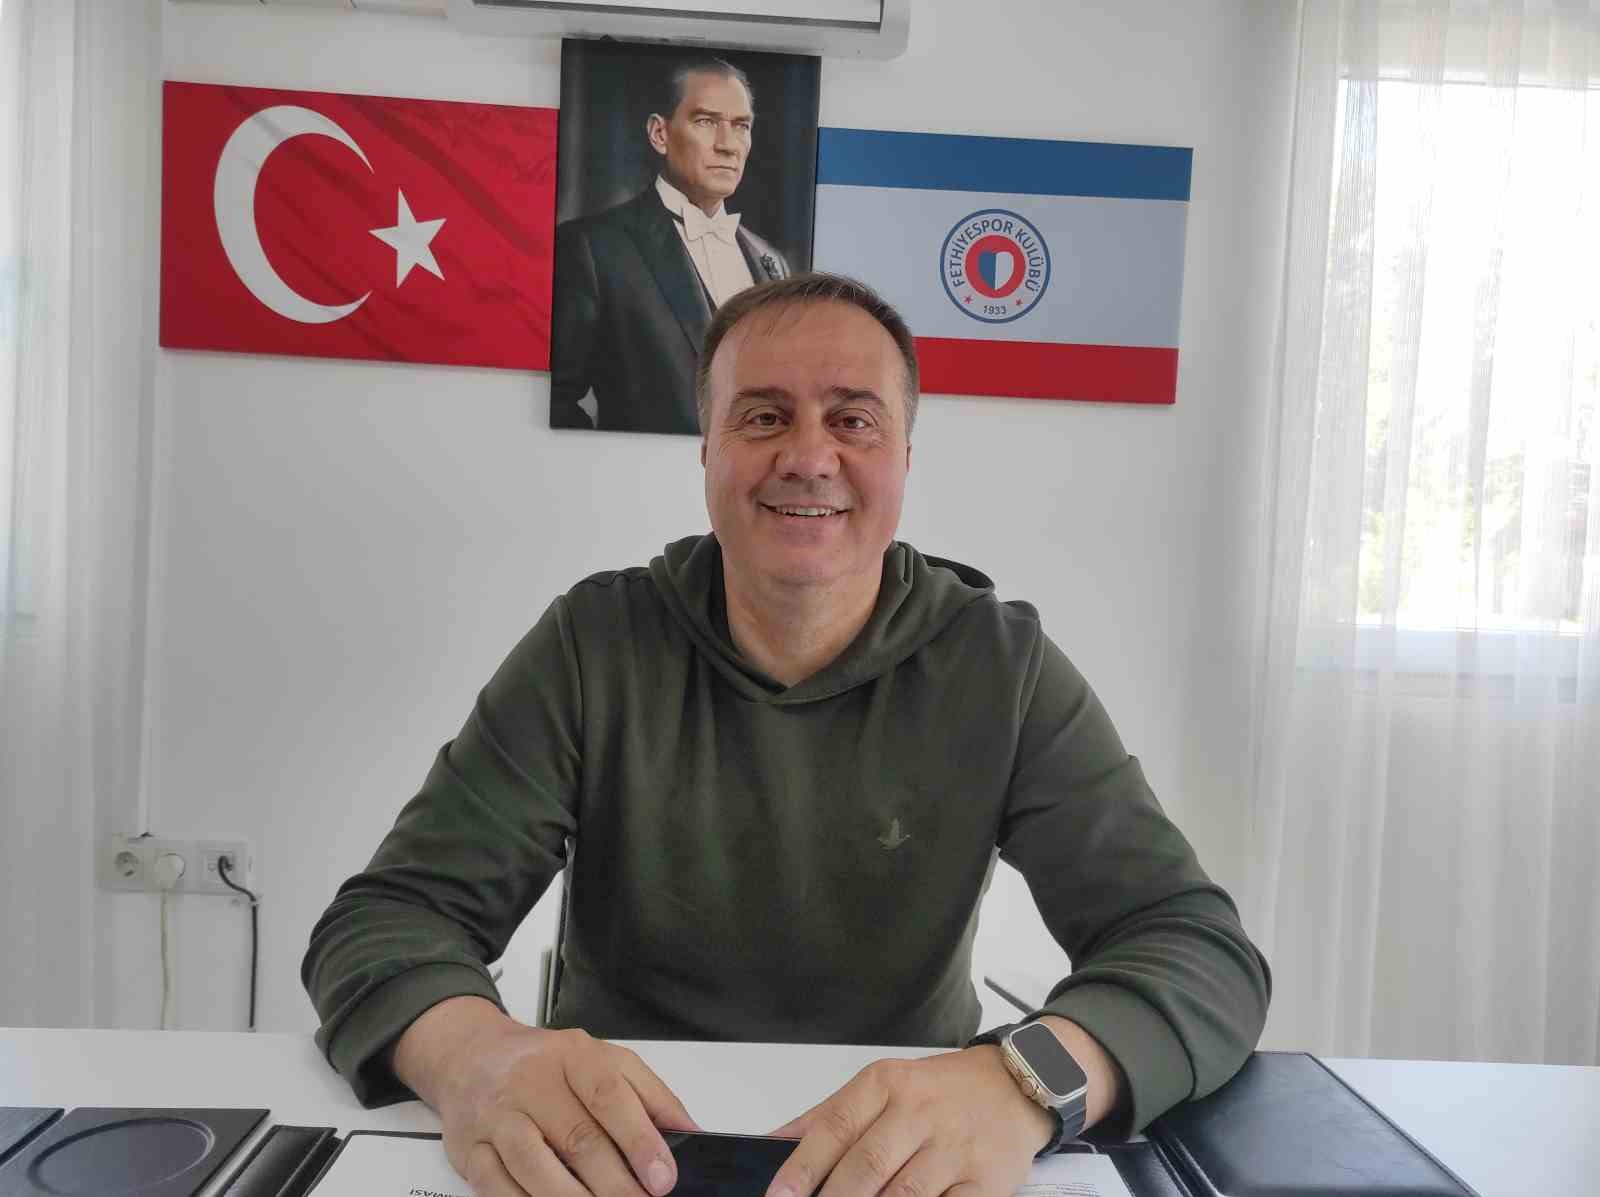 Fethiyespor Teknik Direktörü Dinçel: "Amed maçına çok ciddi hazırlanacağız’